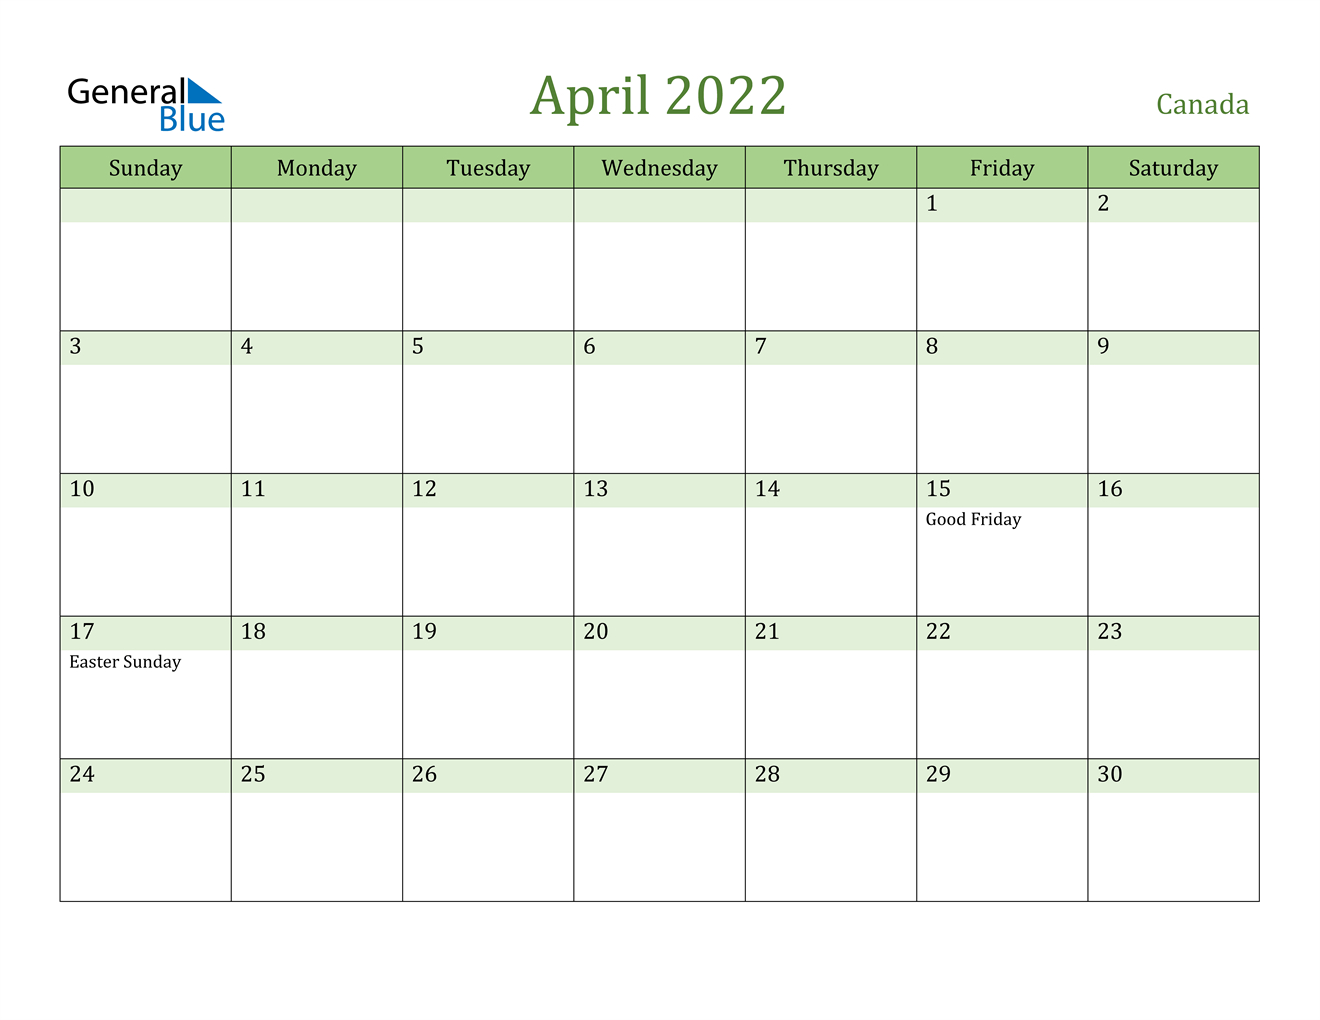 April 2022 Calendar - Canada